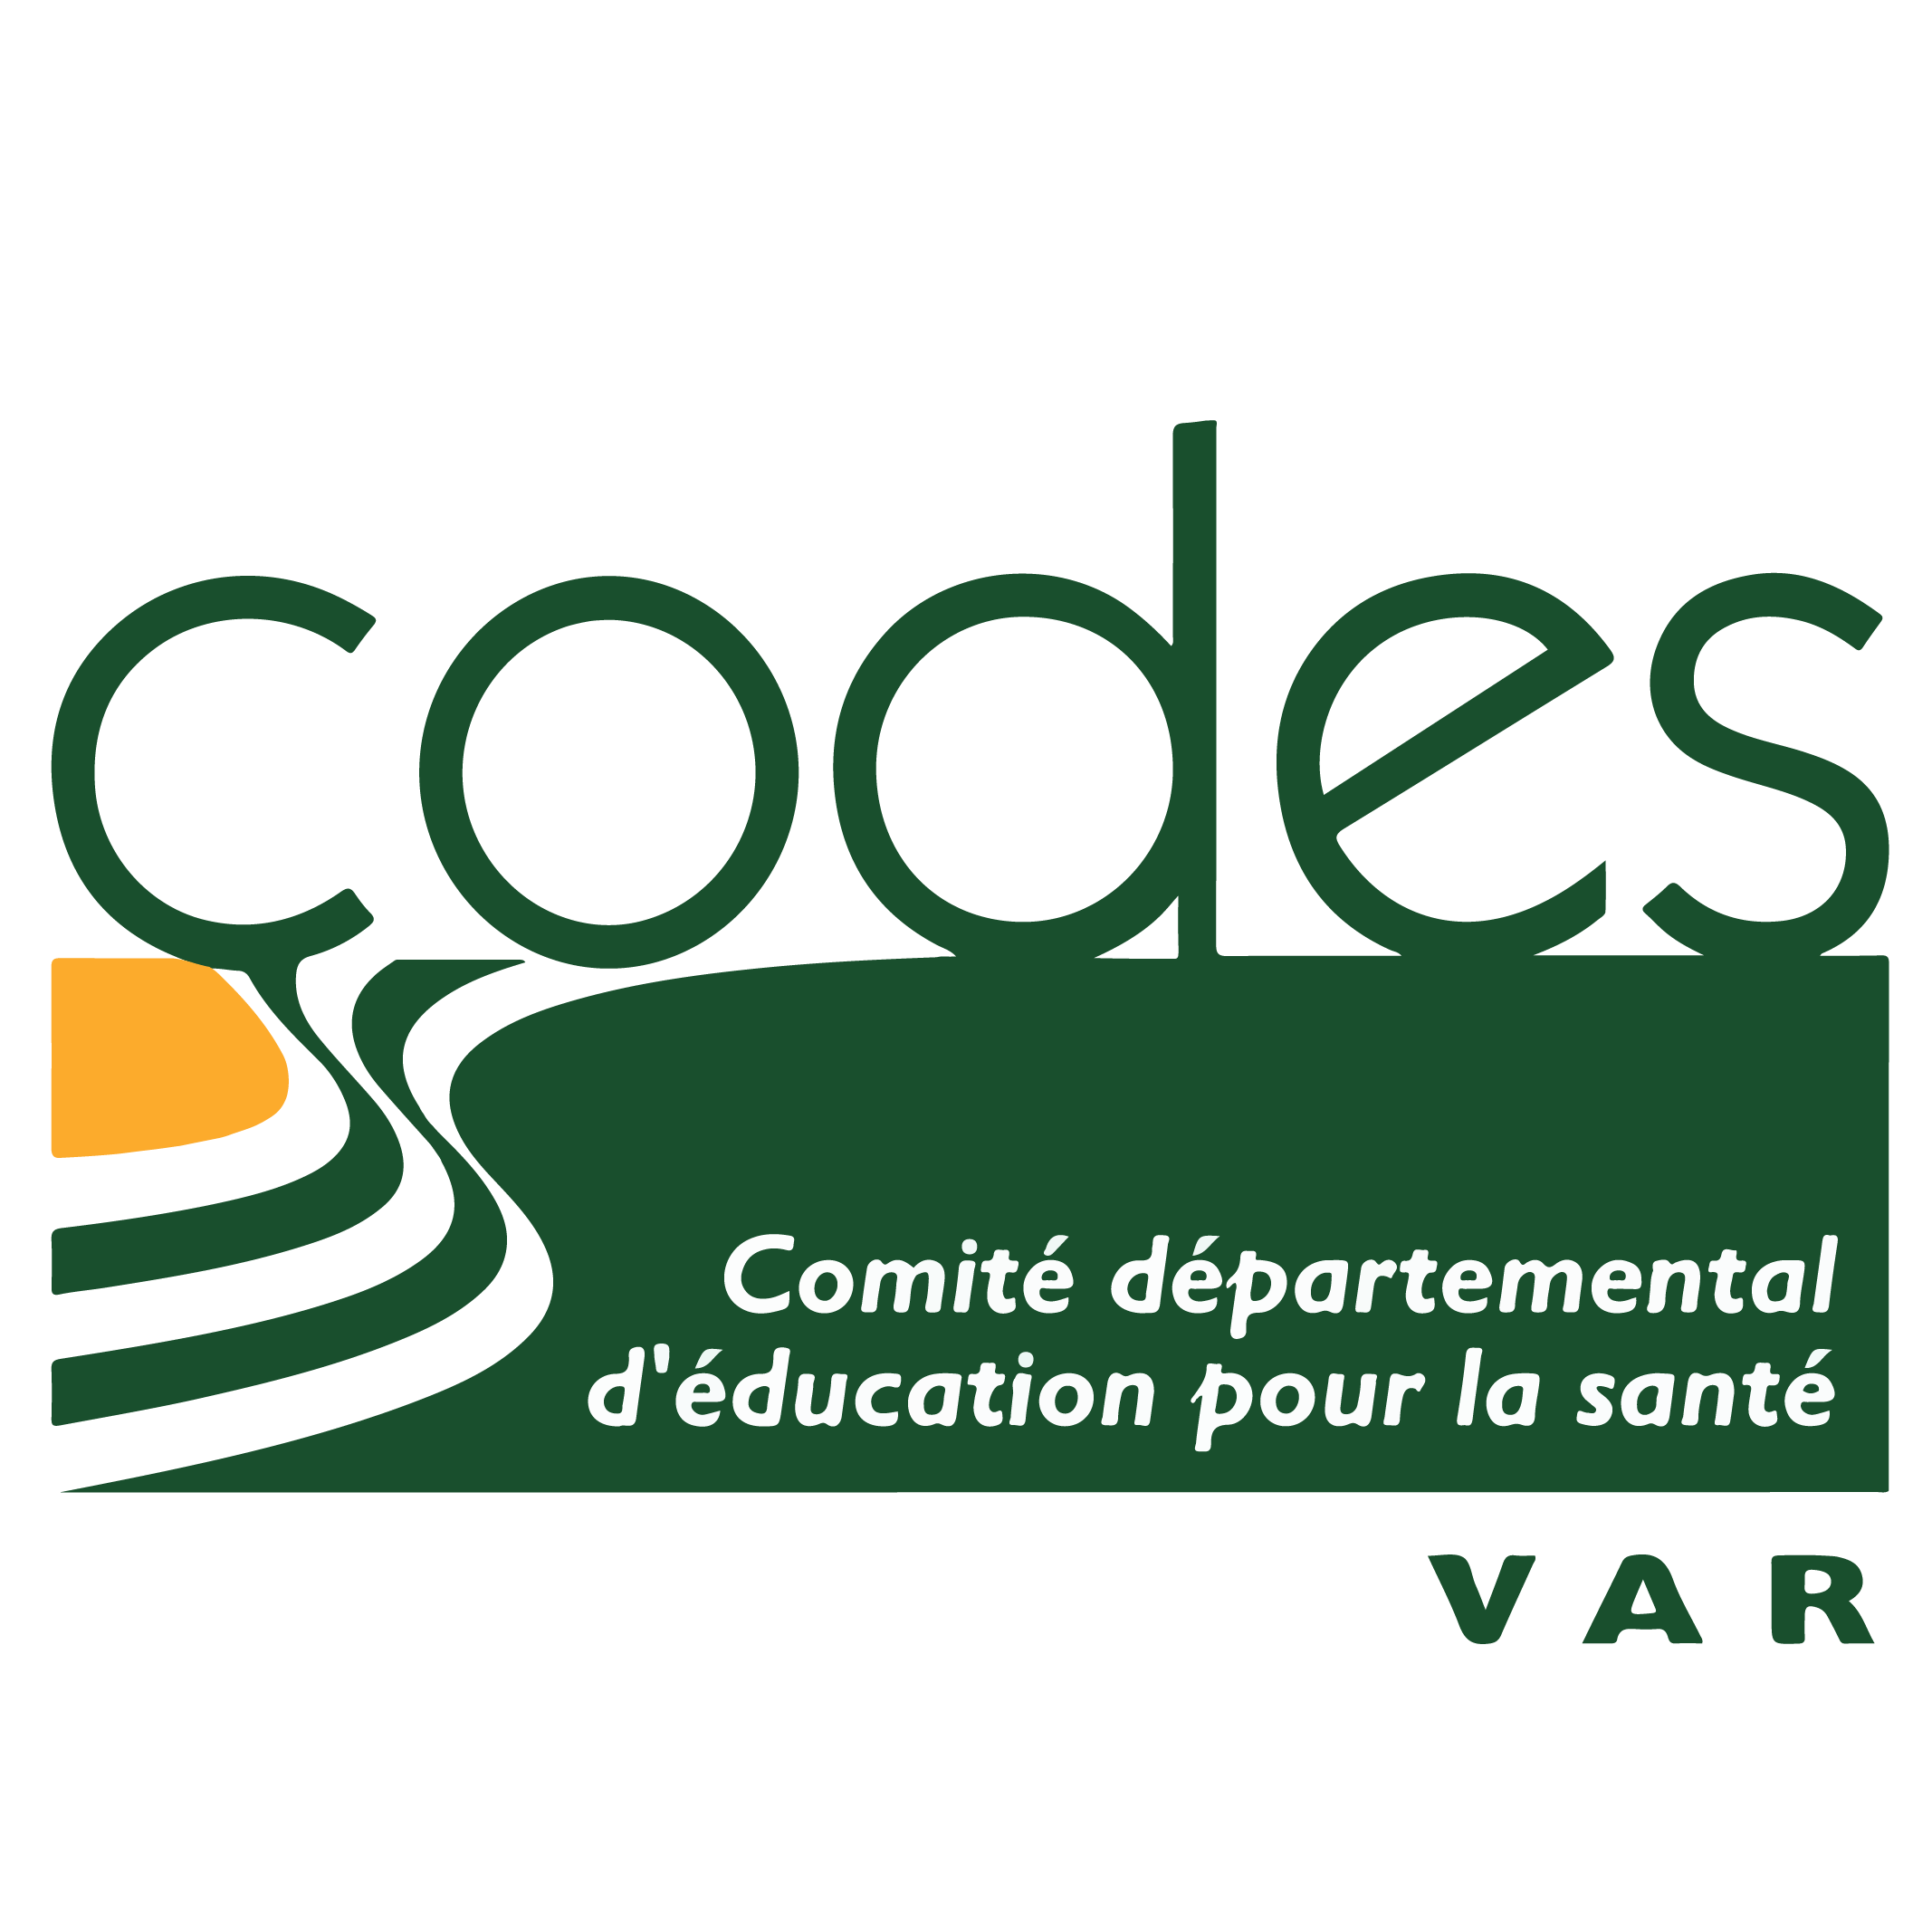 CODES 83 - Le Comité Départemental d'Éducation pour la Santé du Var